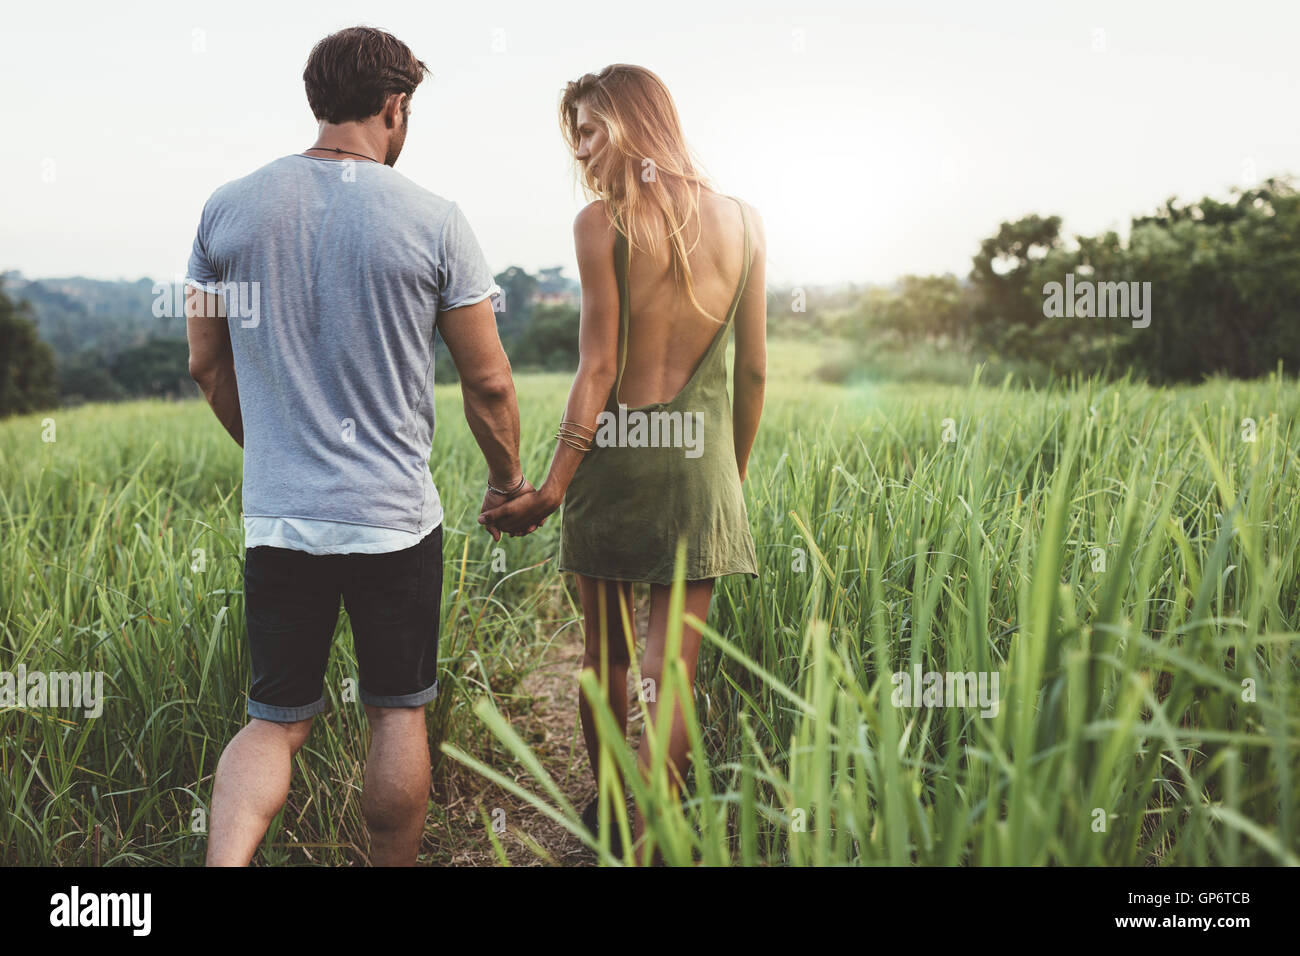 Vista posteriore del tiro del giovane uomo e donna holding hands camminare insieme attraverso il campo di erba. Coppia giovane a piedi attraverso grassy ro Foto Stock